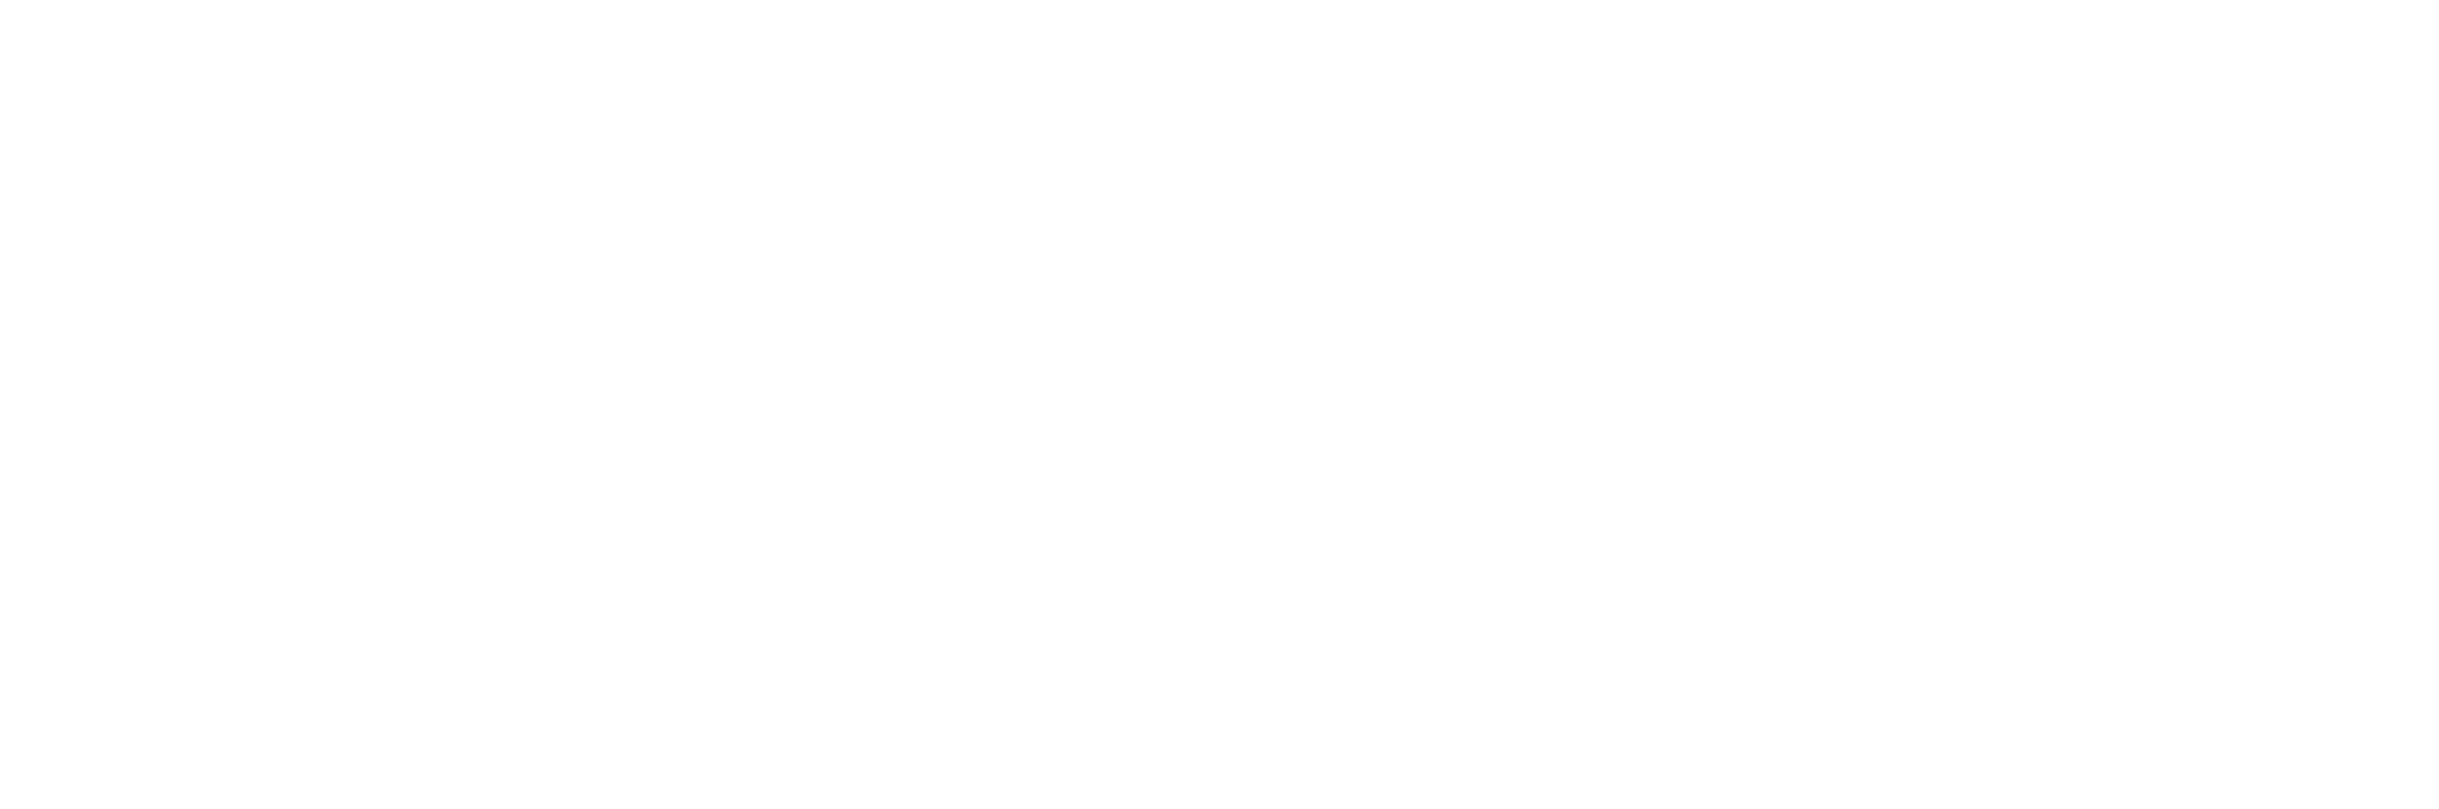 Utilfreds let at håndtere marathon Skipperfurniture - Scandinavian design, furniture for public spaces.